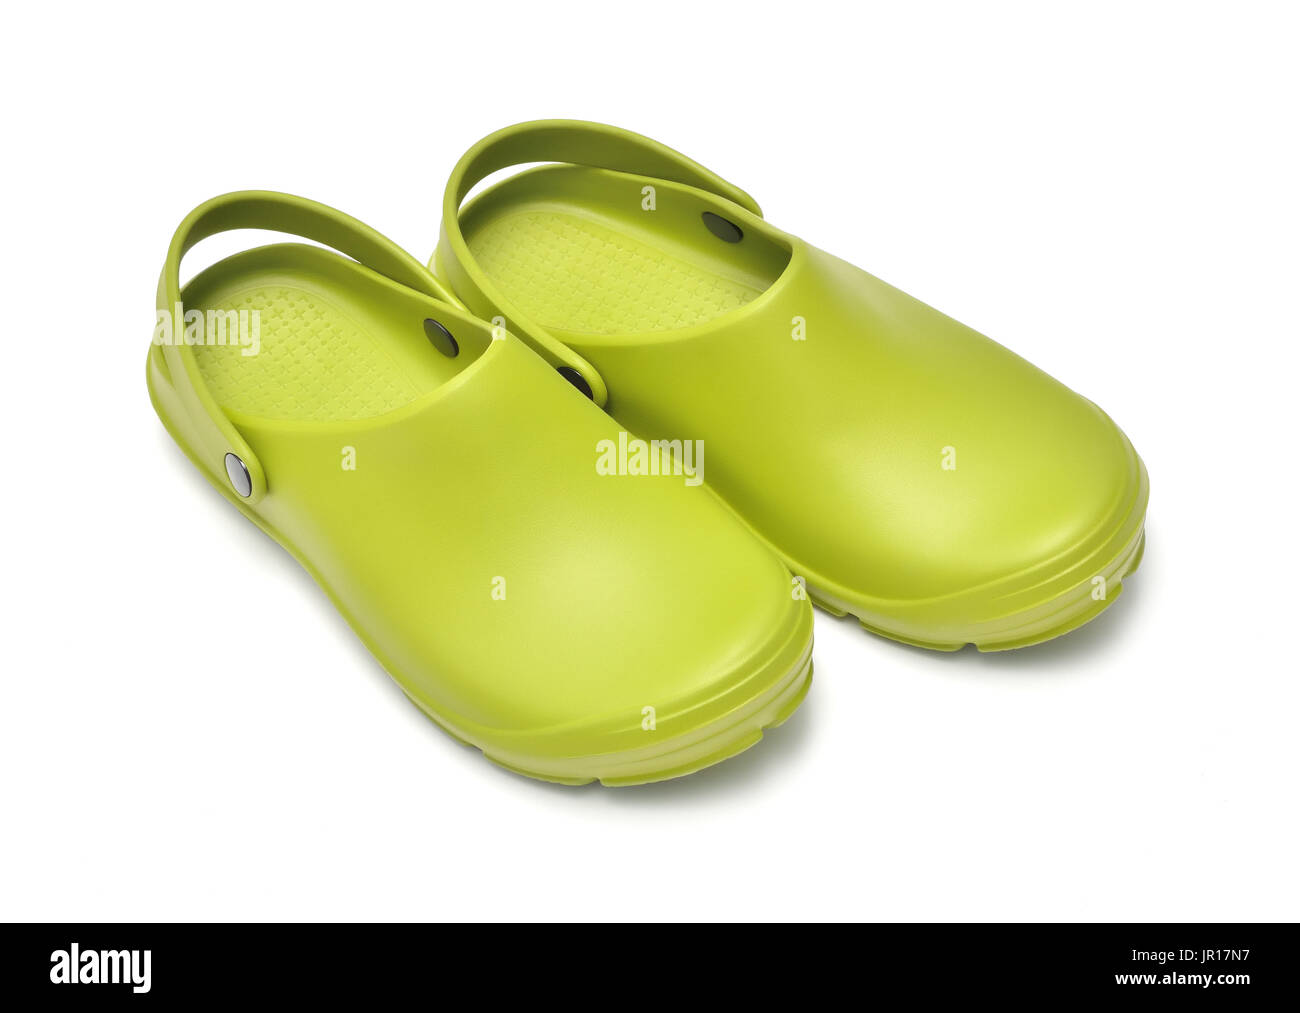 Scarpe Di Plastica Verde Con Zoccoli Immagini e Fotos Stock - Alamy